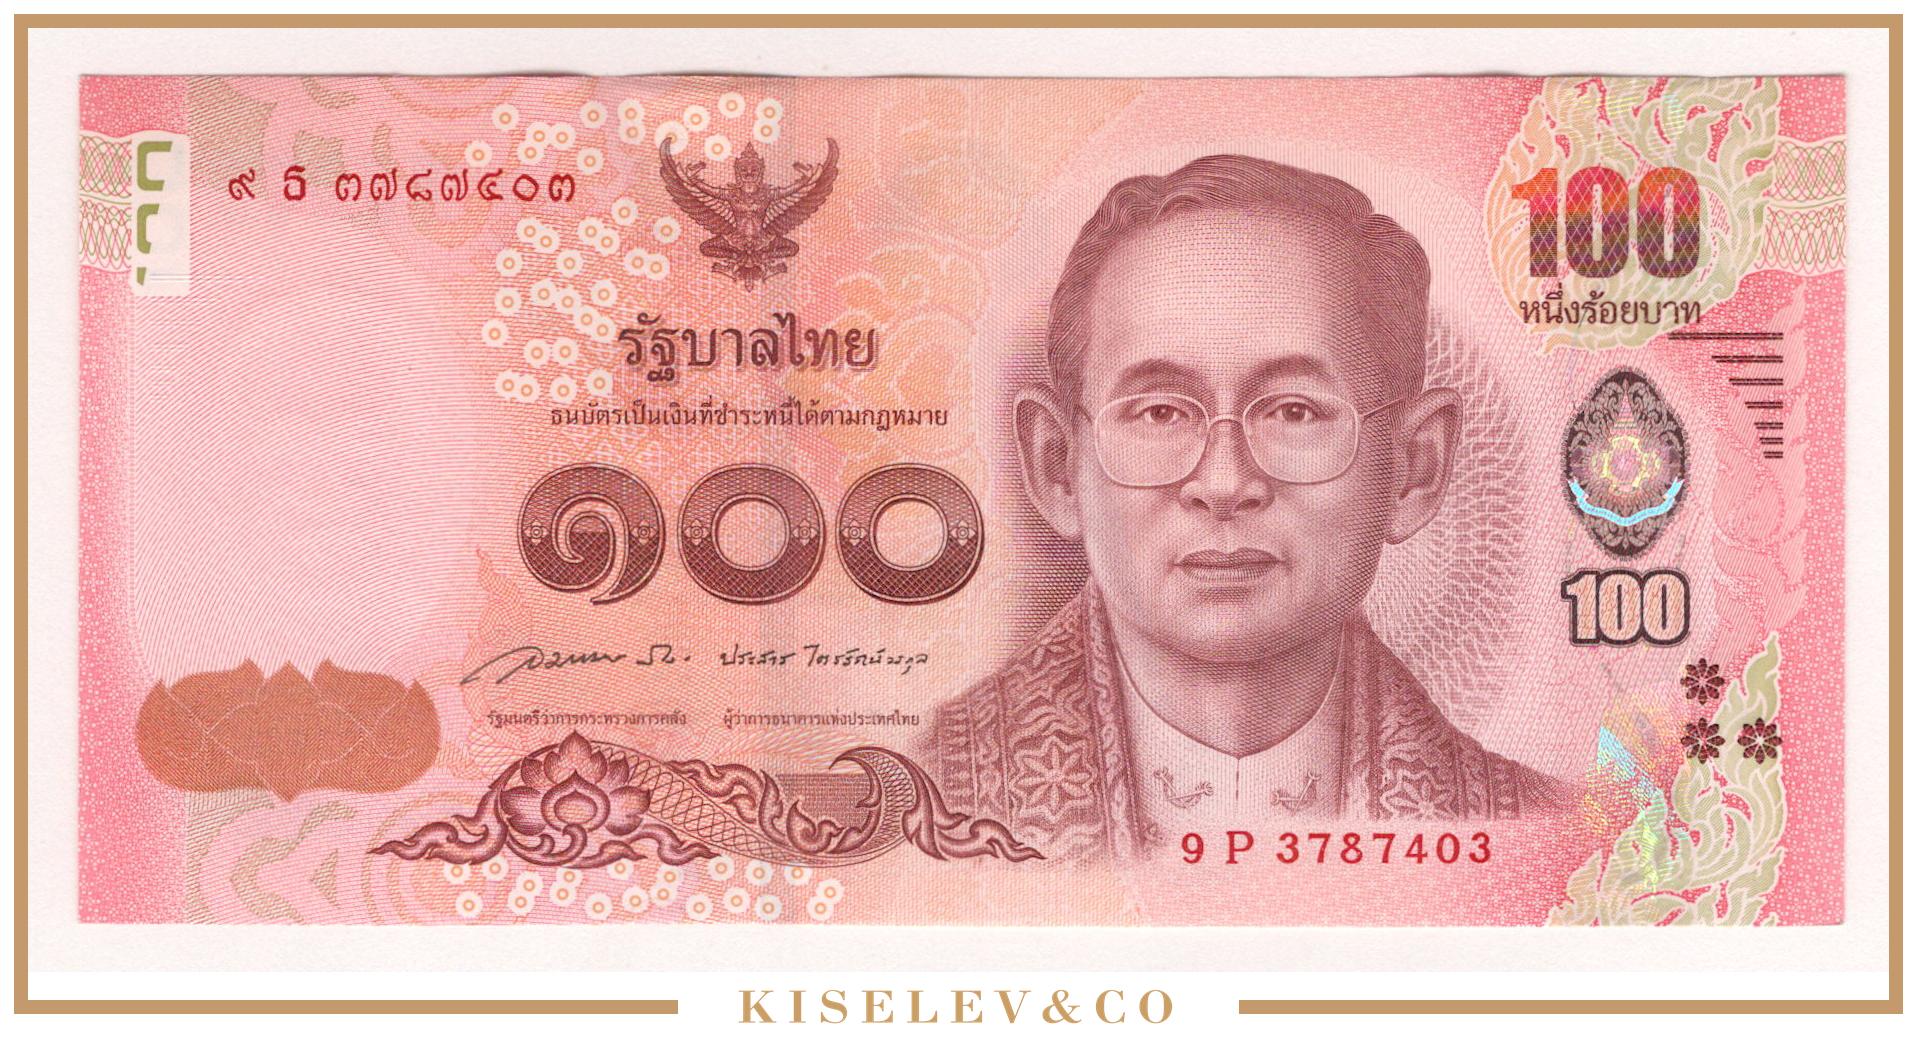 15000 батов в рублях. 100 Бат Таиланд банкнота. 100 Бат Таиланд банкнота в рублях. Банкнота Таиланда 100 бат 22012. Банкнота Тайланд 16 бат.